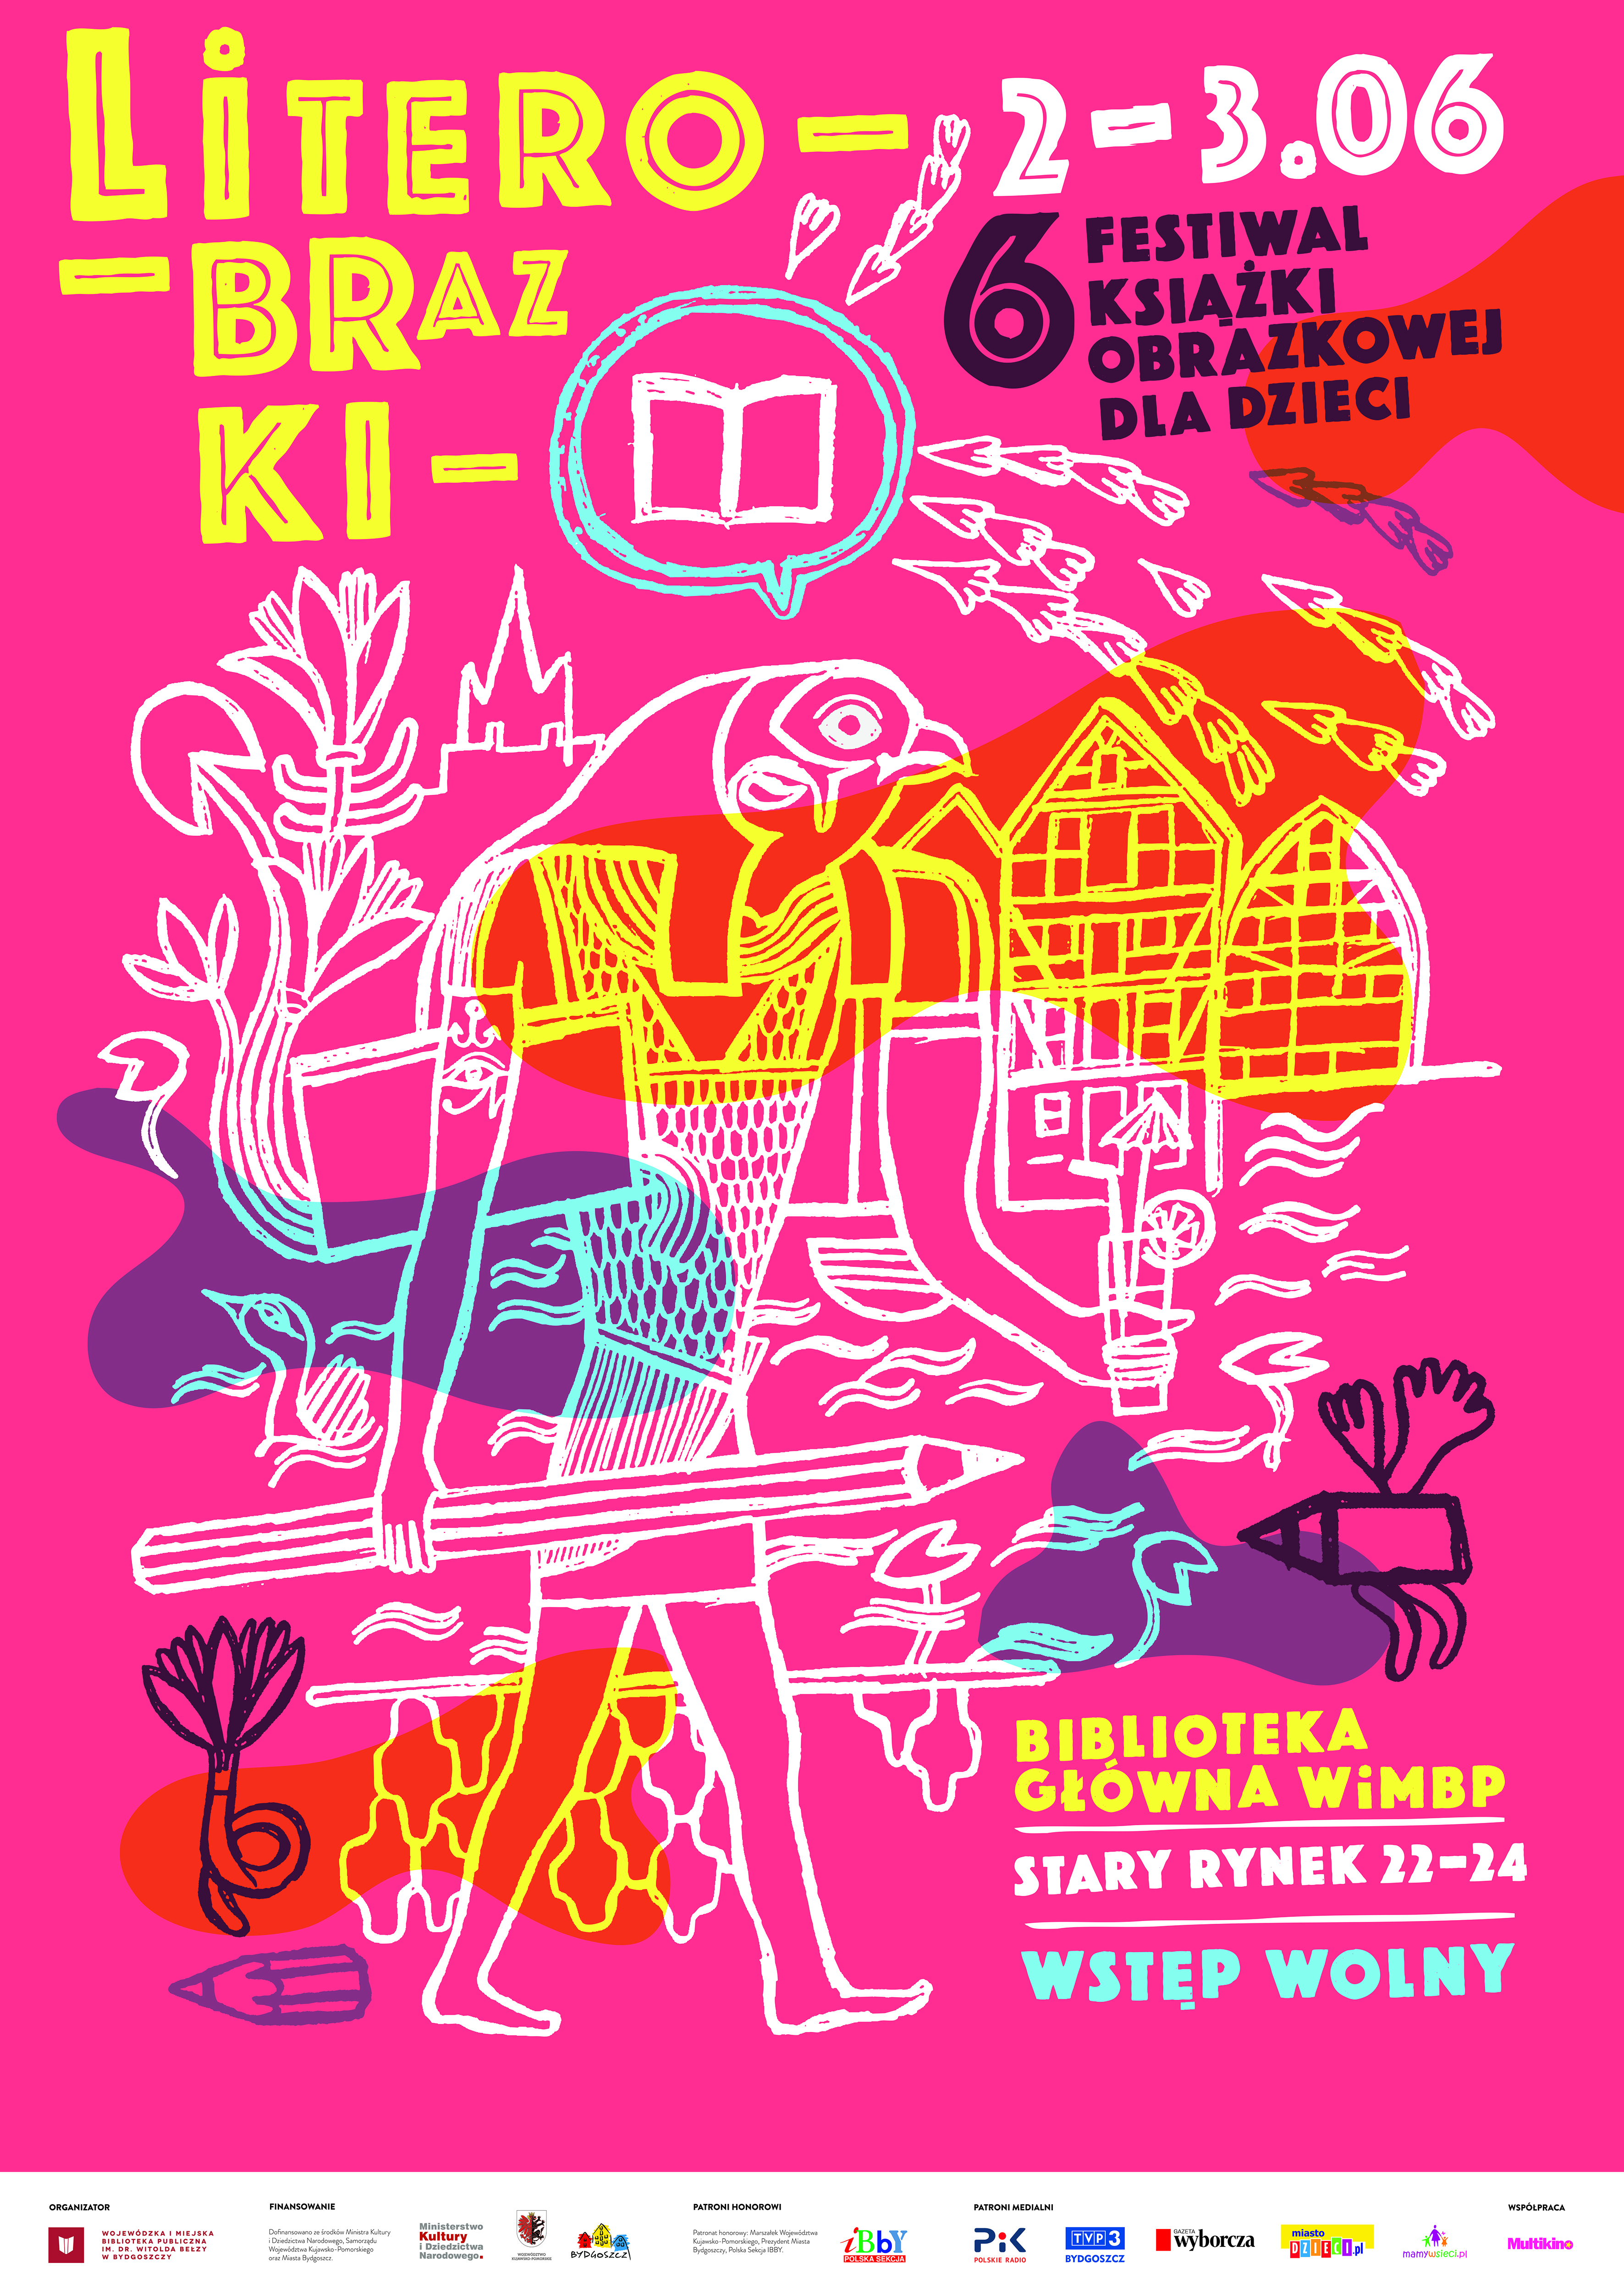 Festiwal Książki Obrazkowej dla Dzieci LiterObrazki